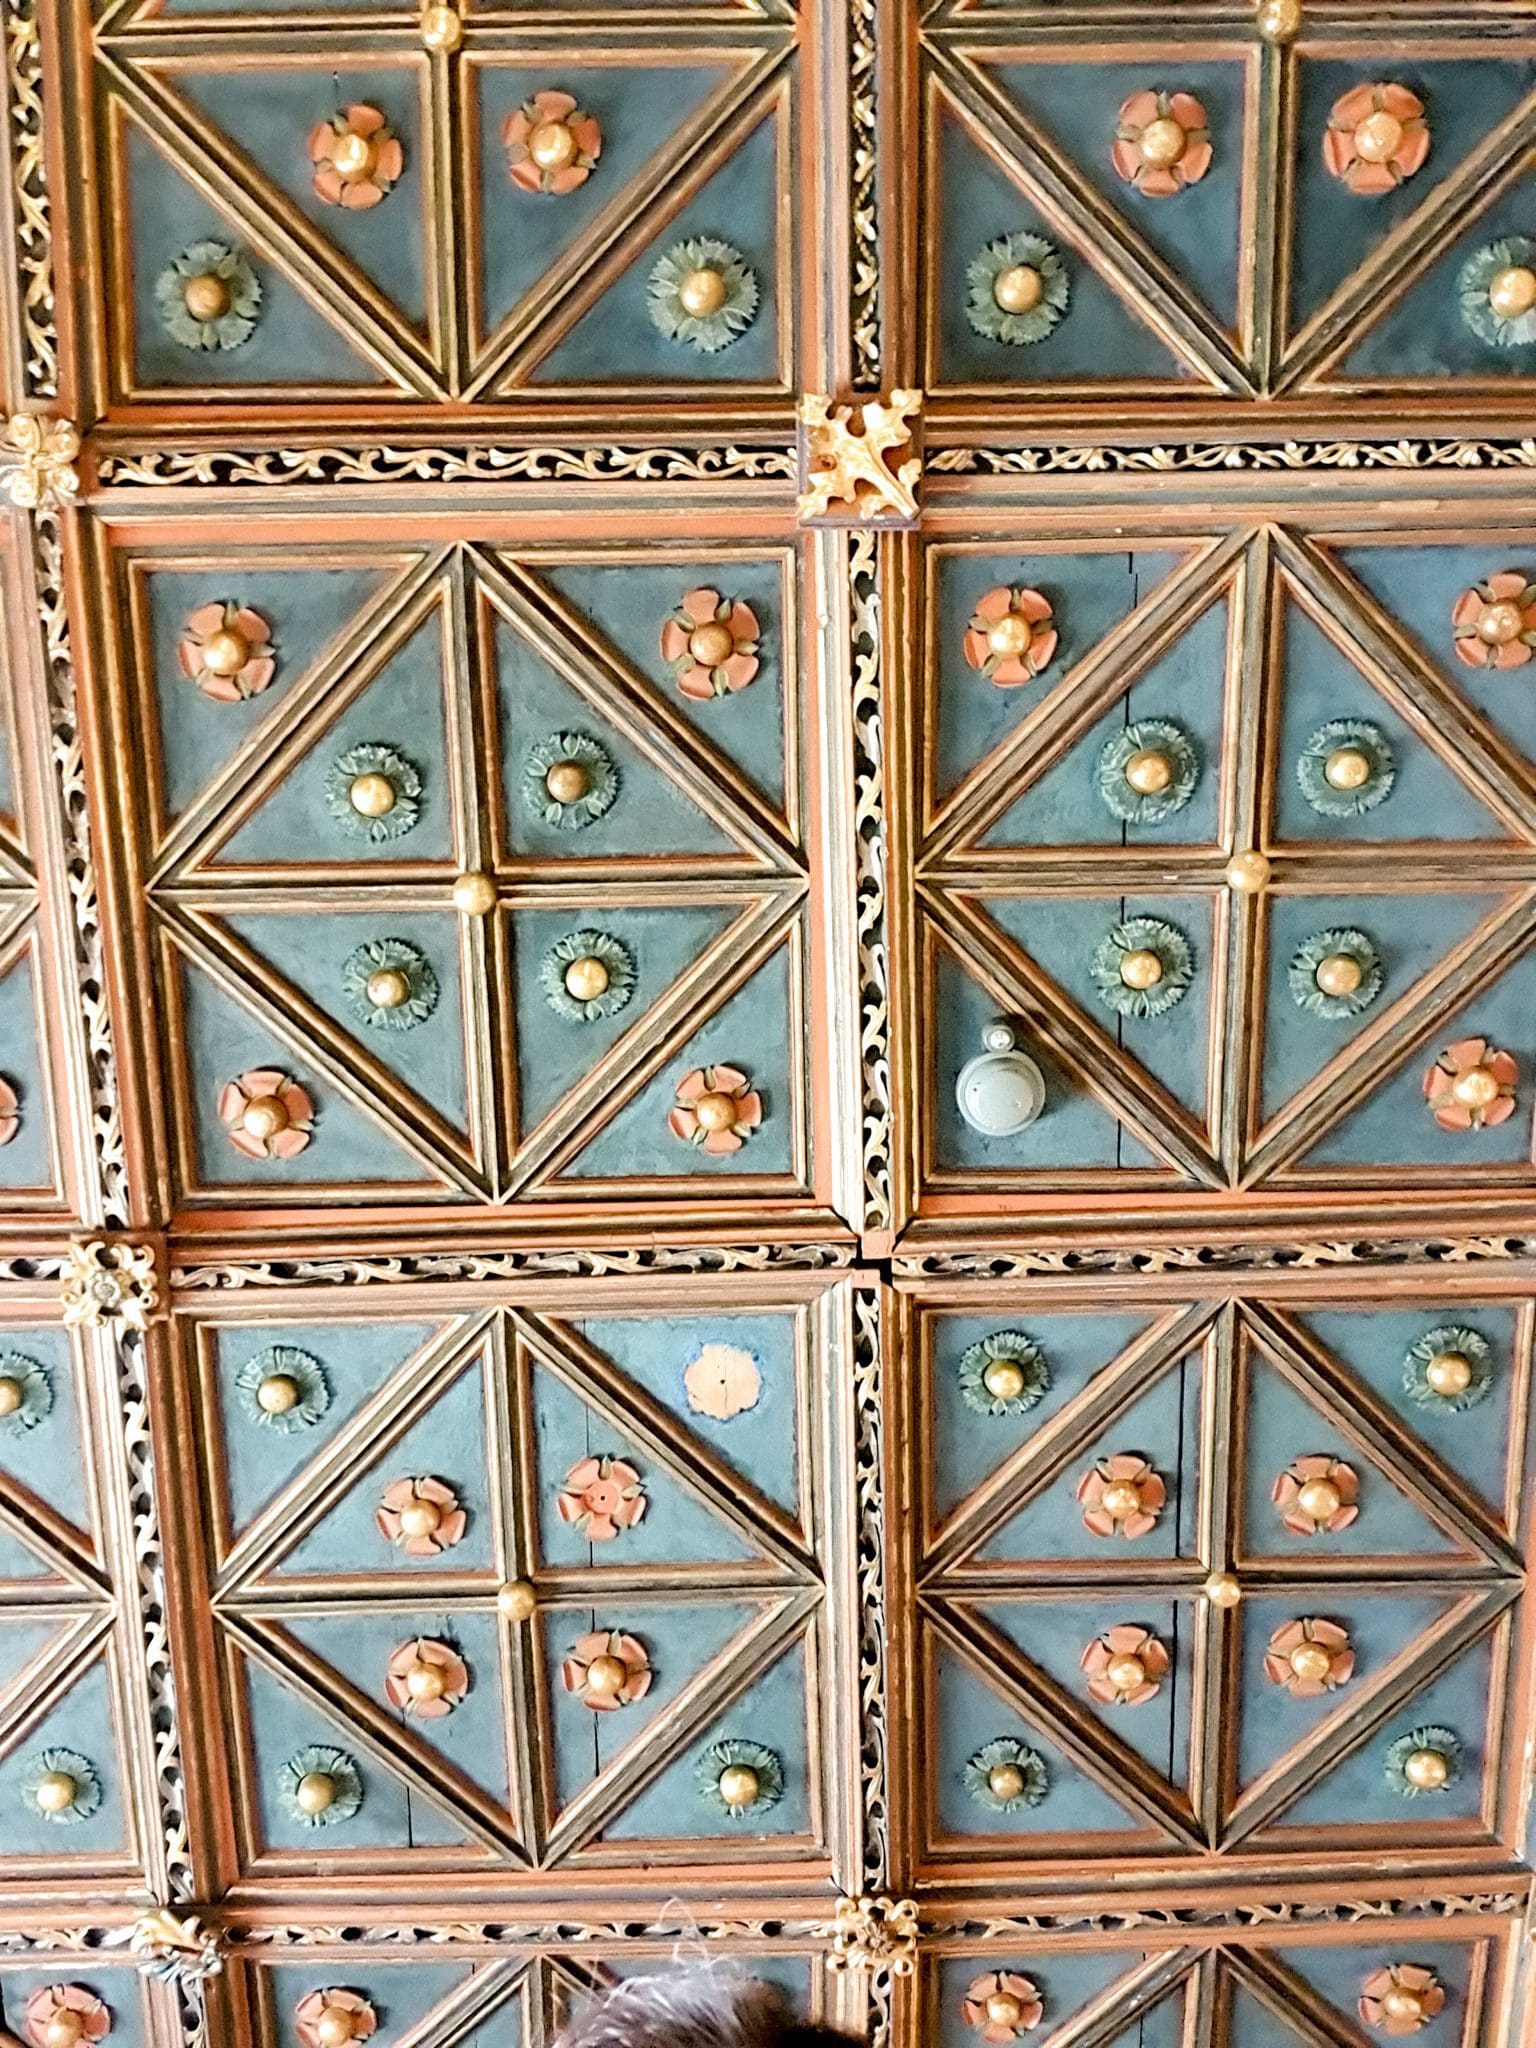 Ornate roof details